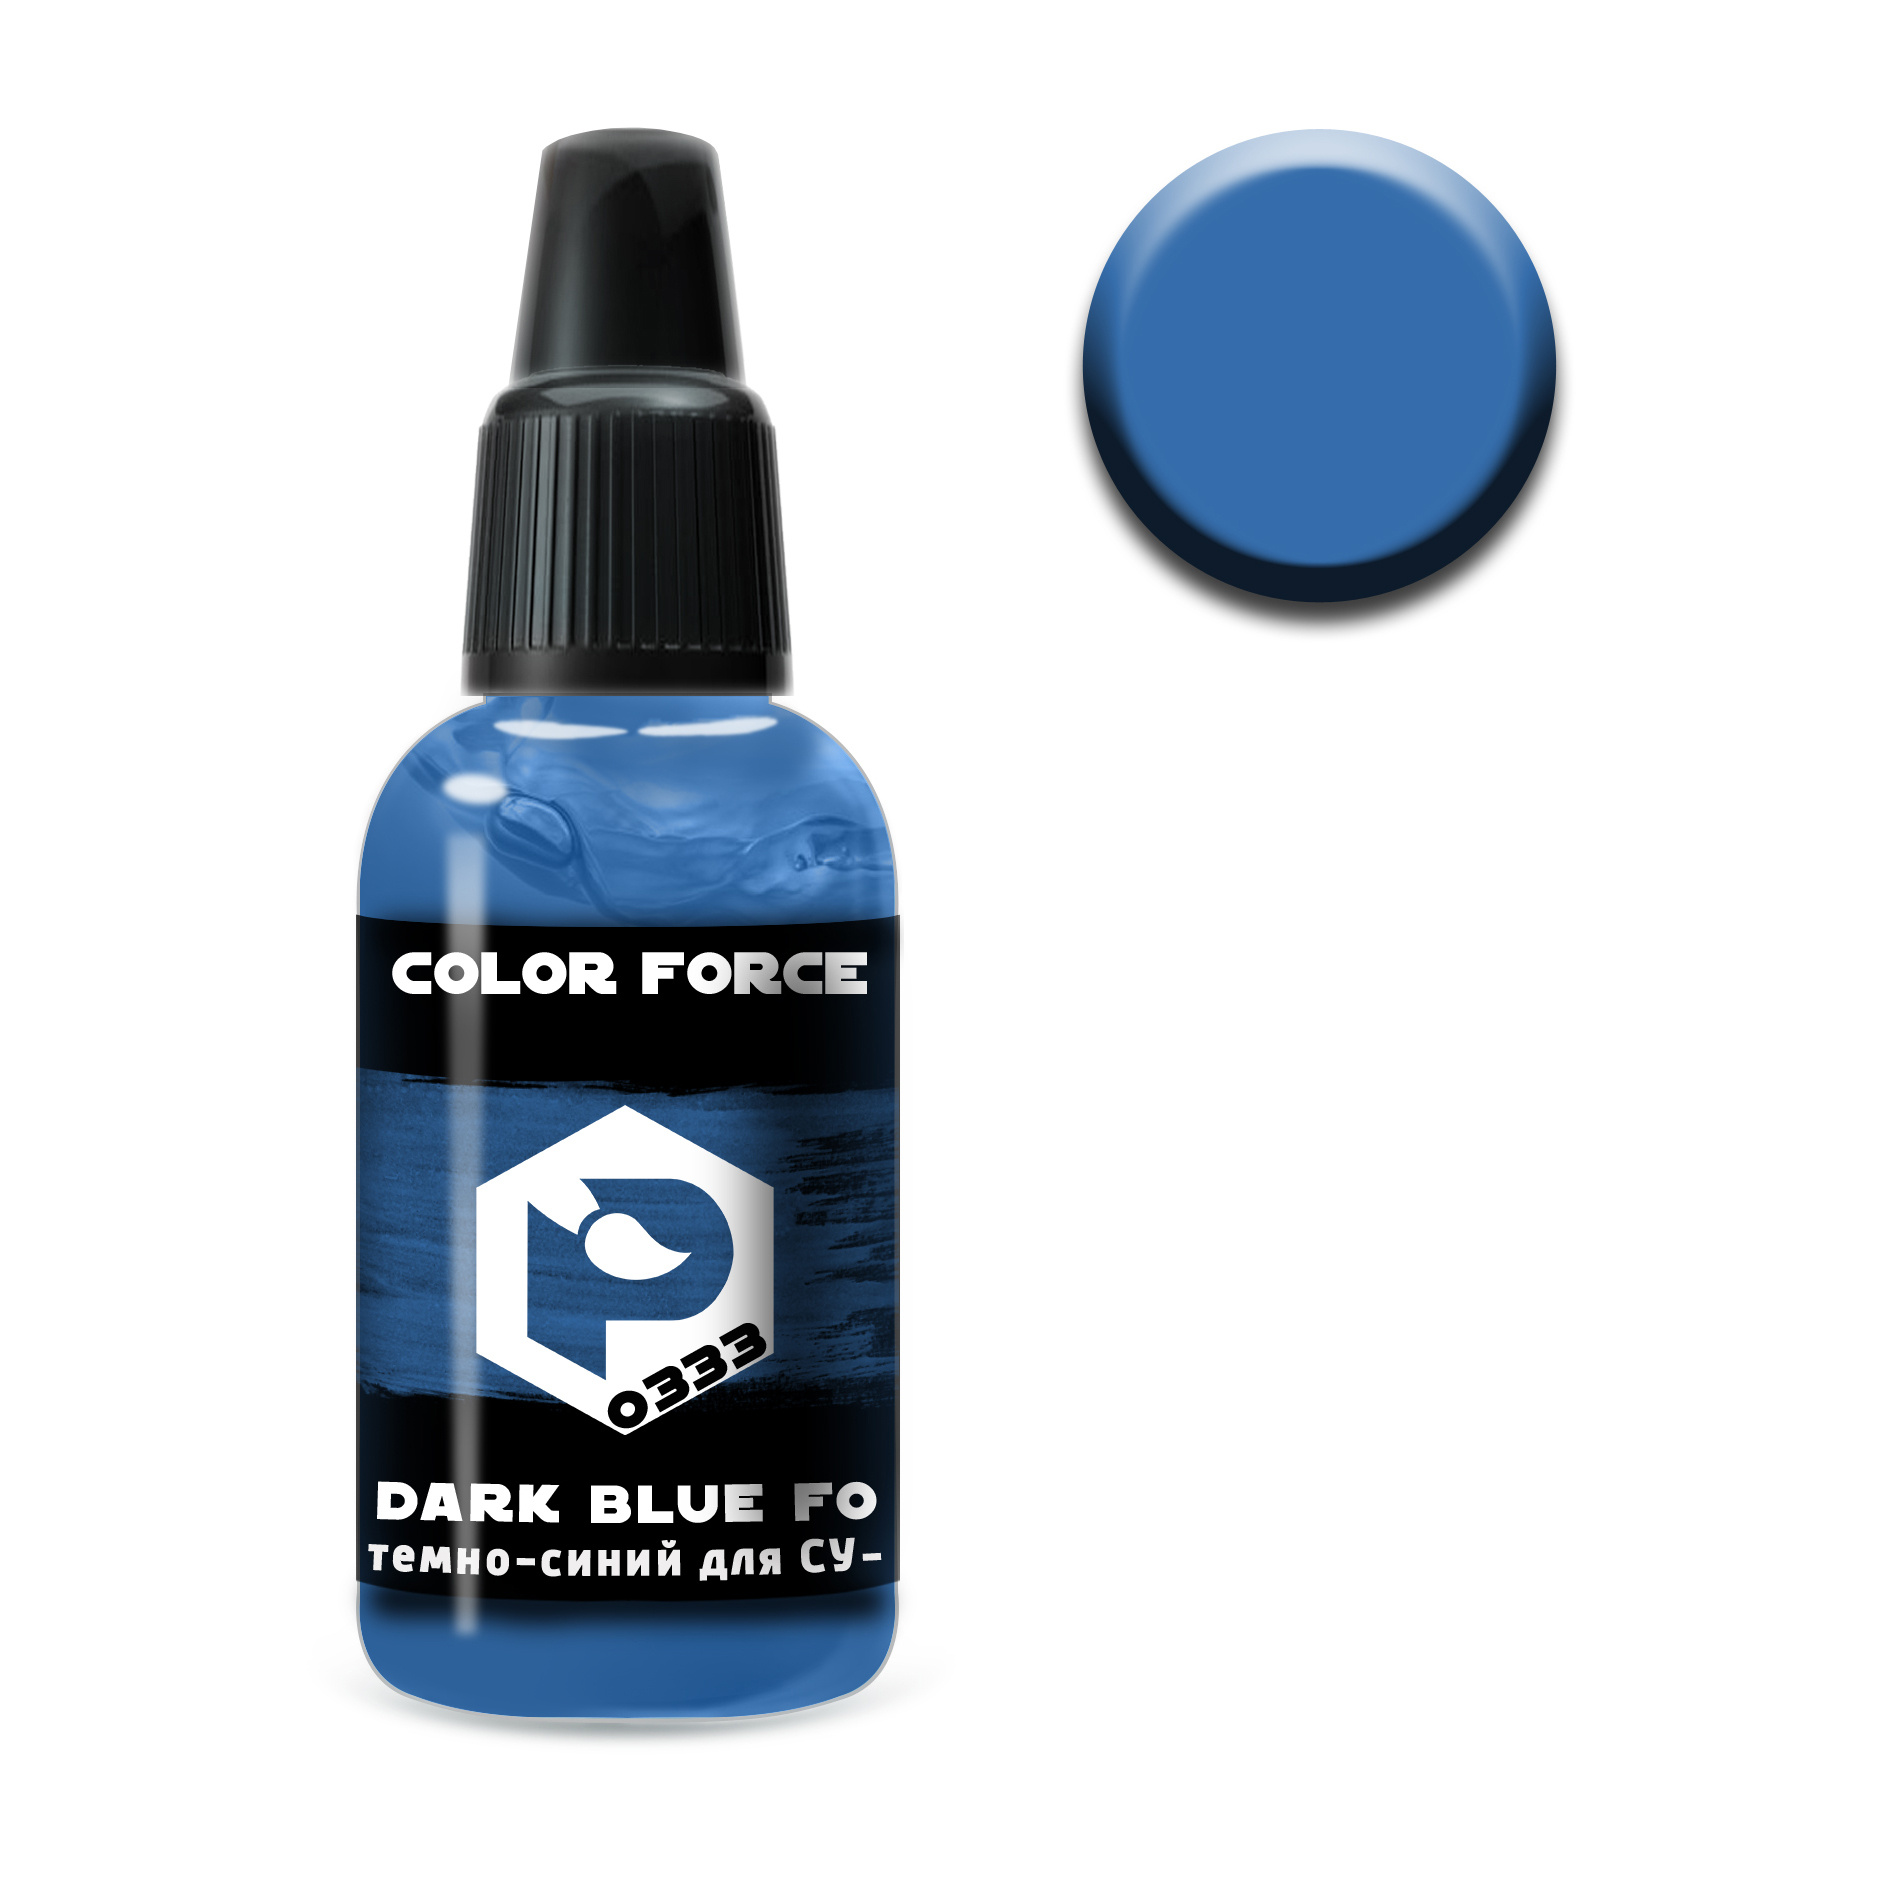 арт.0333 Pacific88 Краска для аэрографии Color Force Темно-синий для Суххой-33 (Dark blue for S.U.-33)